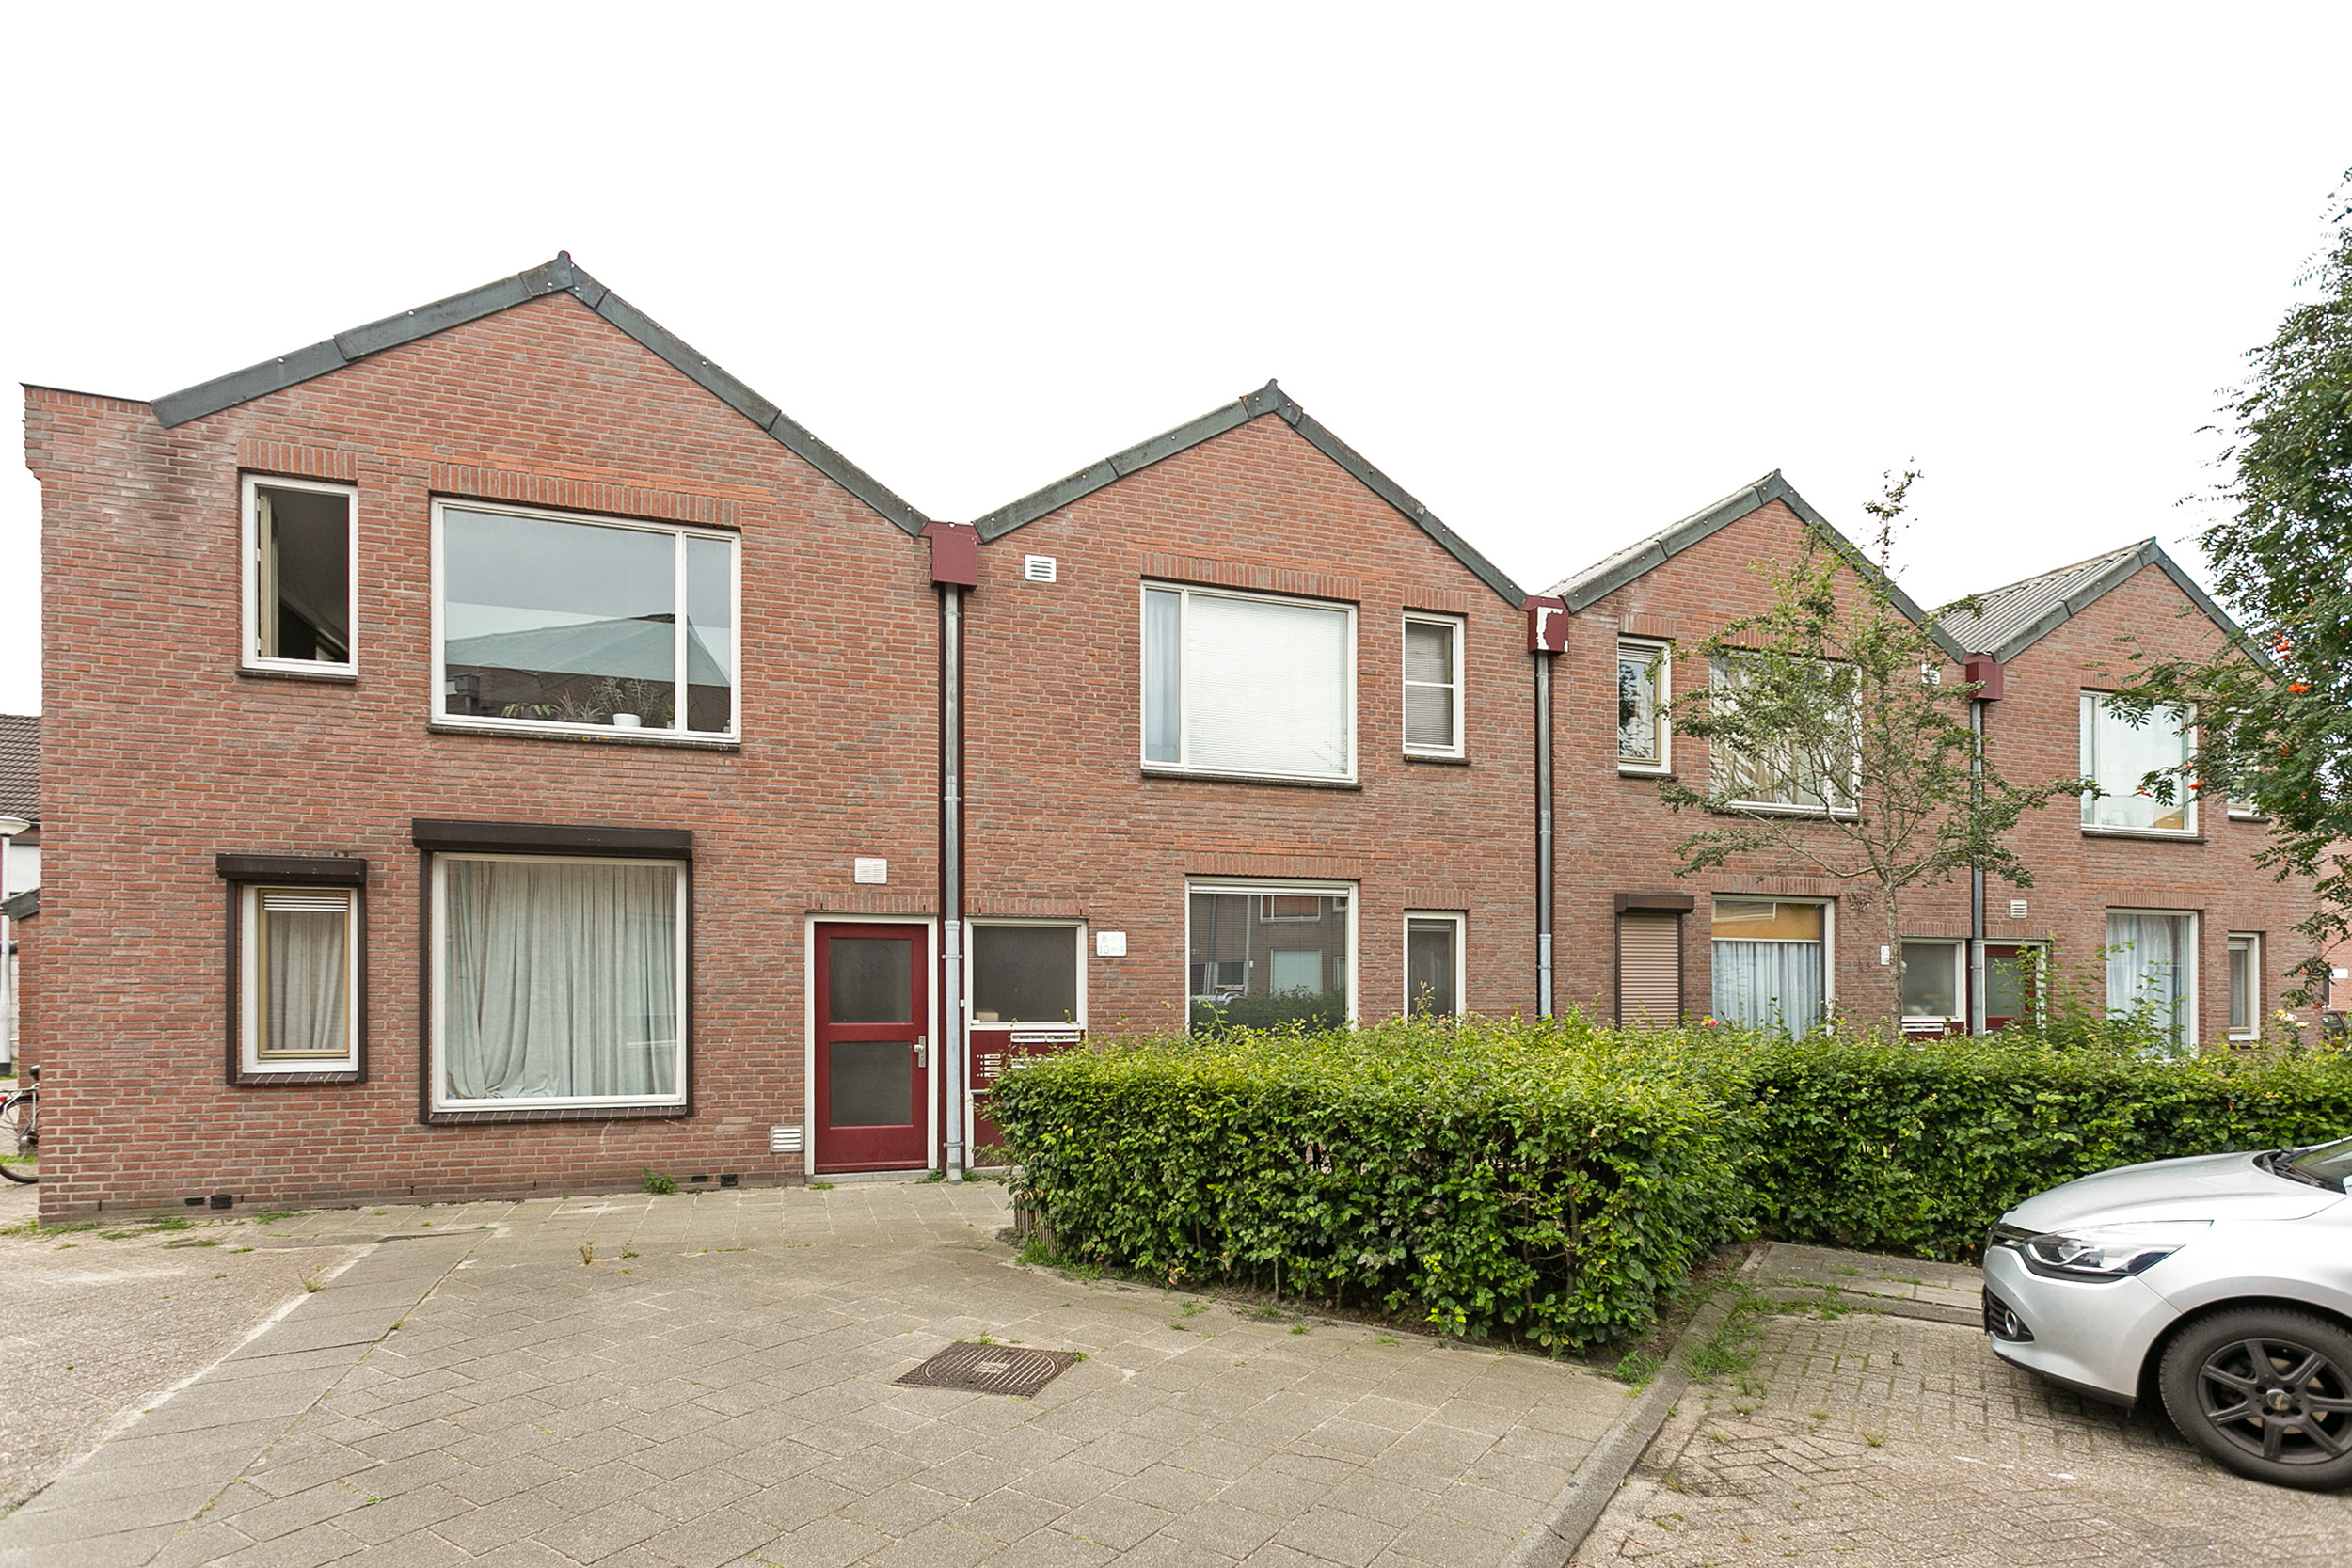 Broerestraat 8A, 5041 AW Tilburg, Nederland